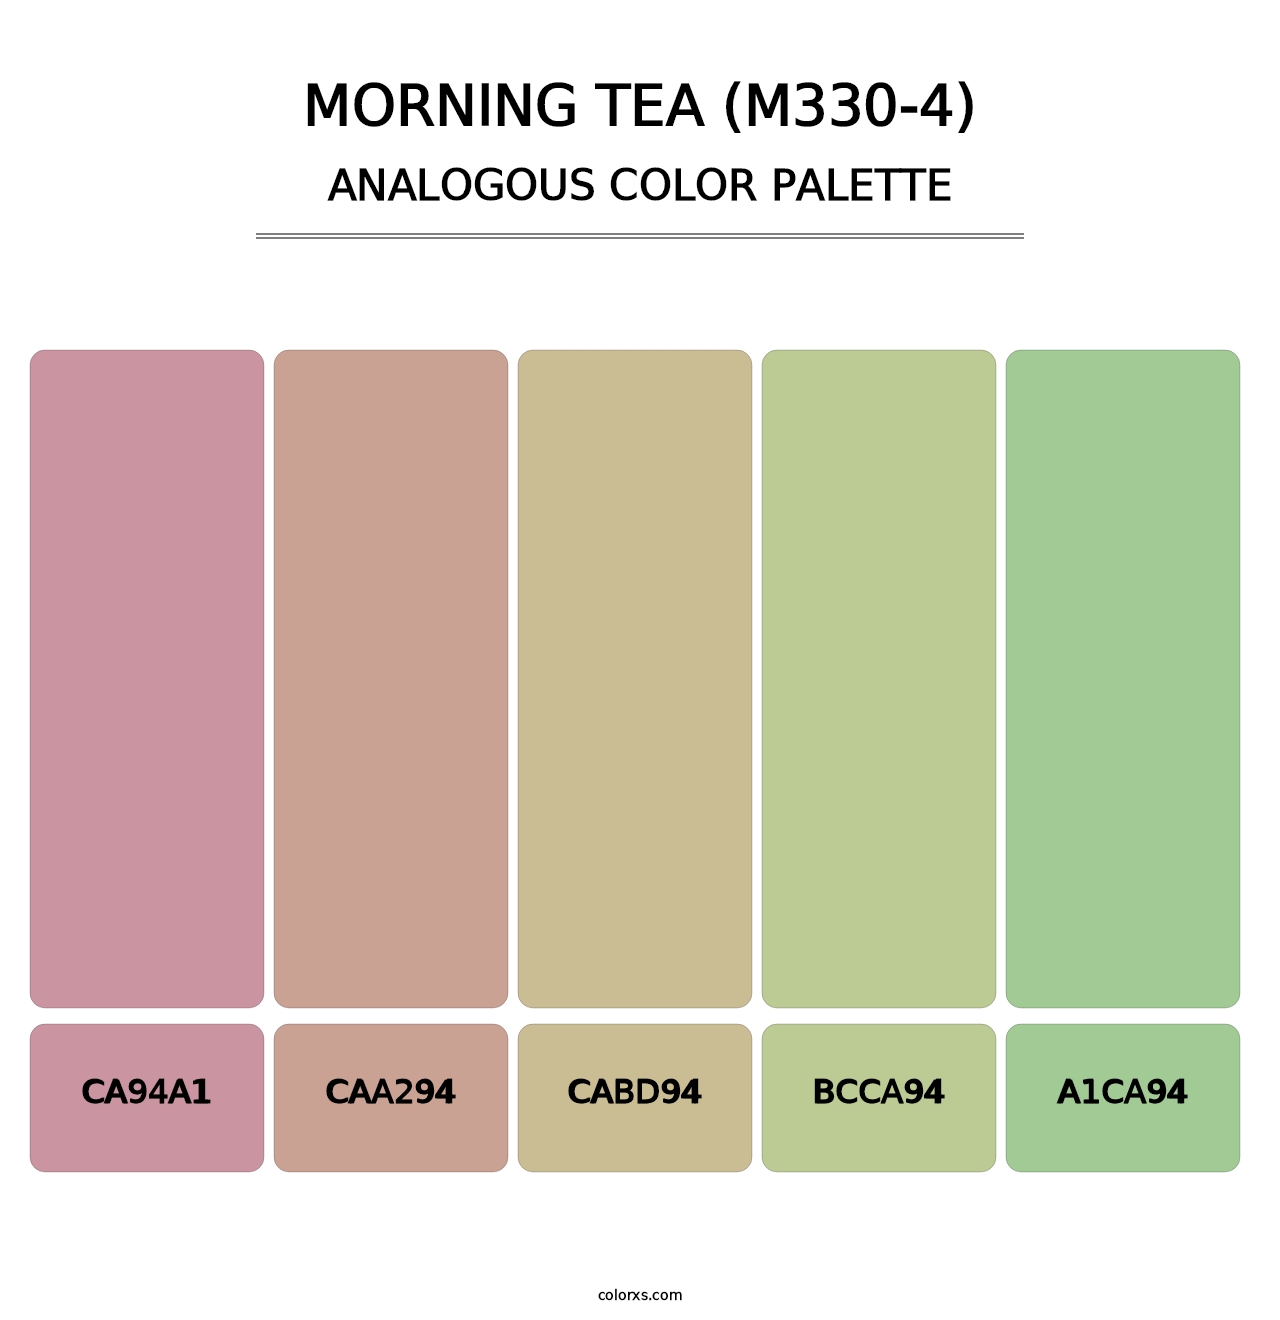 Morning Tea (M330-4) - Analogous Color Palette